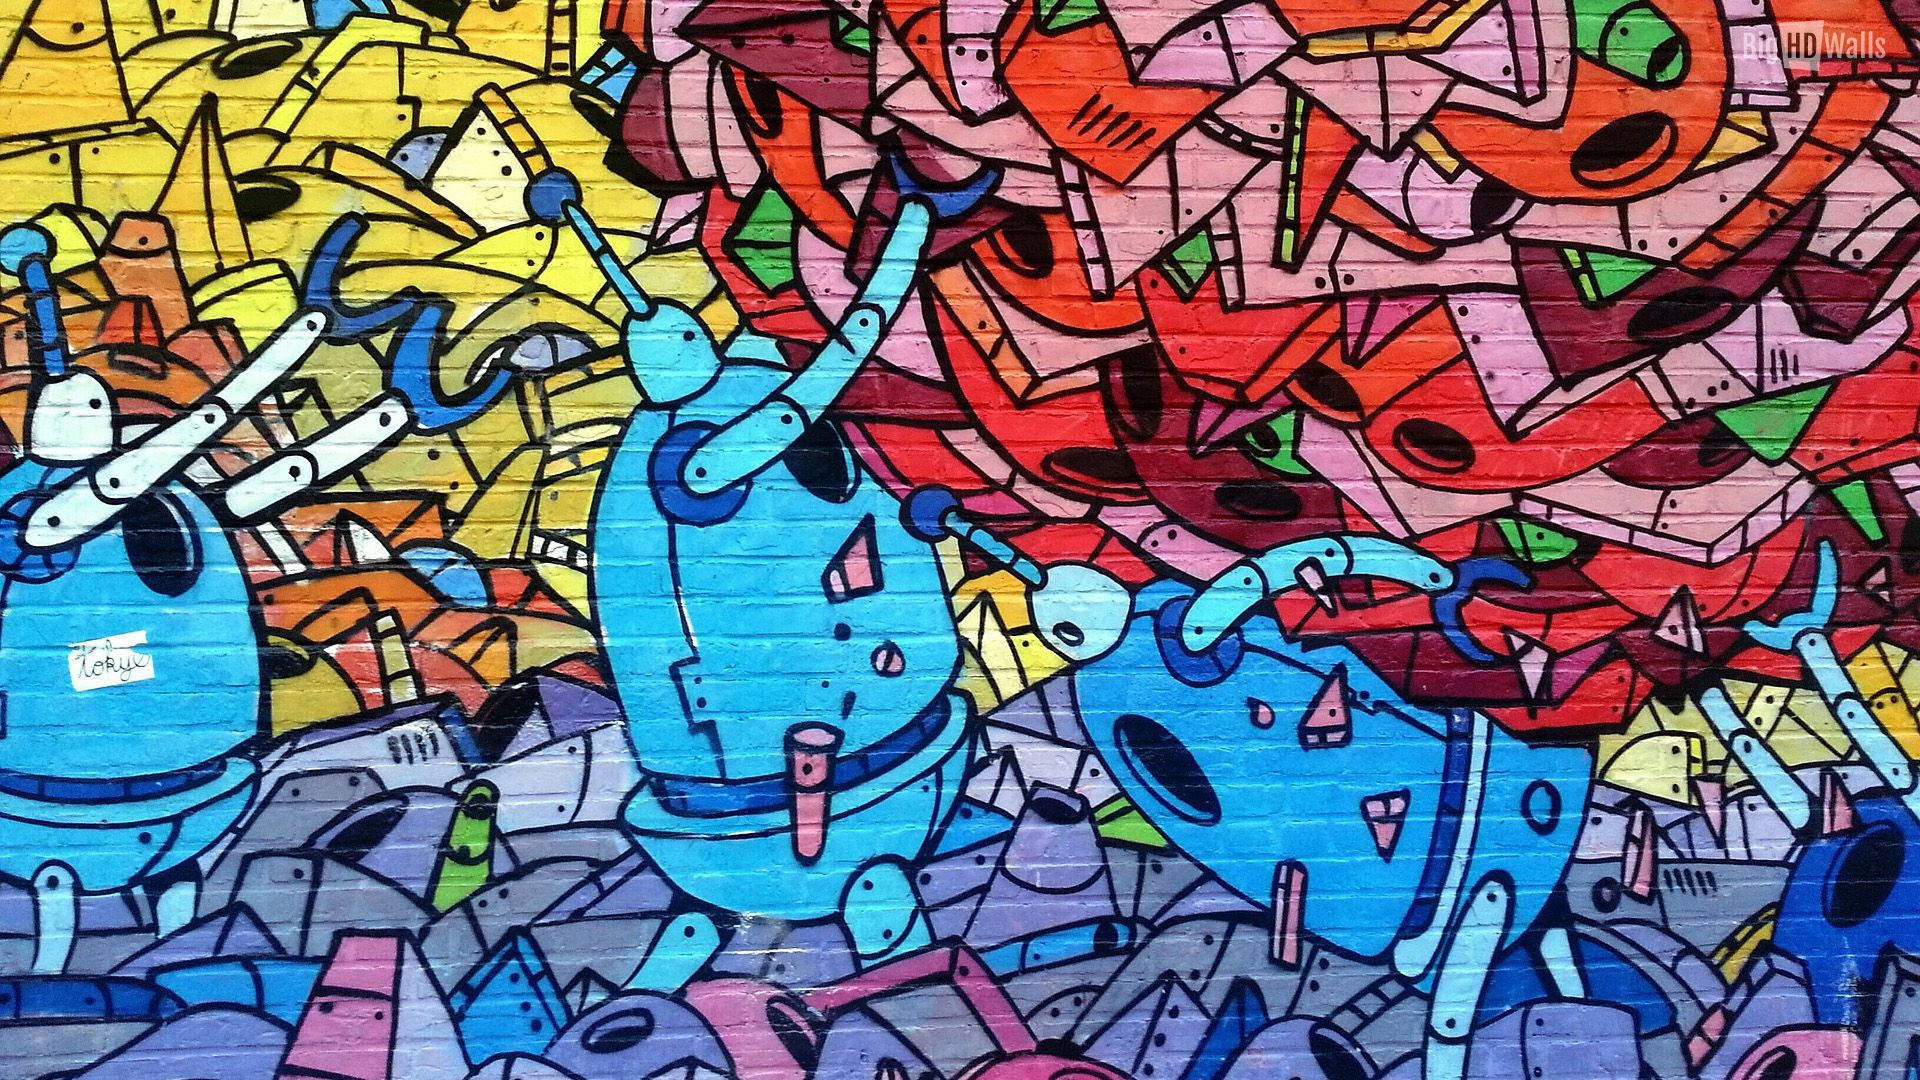 Colorful Cyborg Urban Art